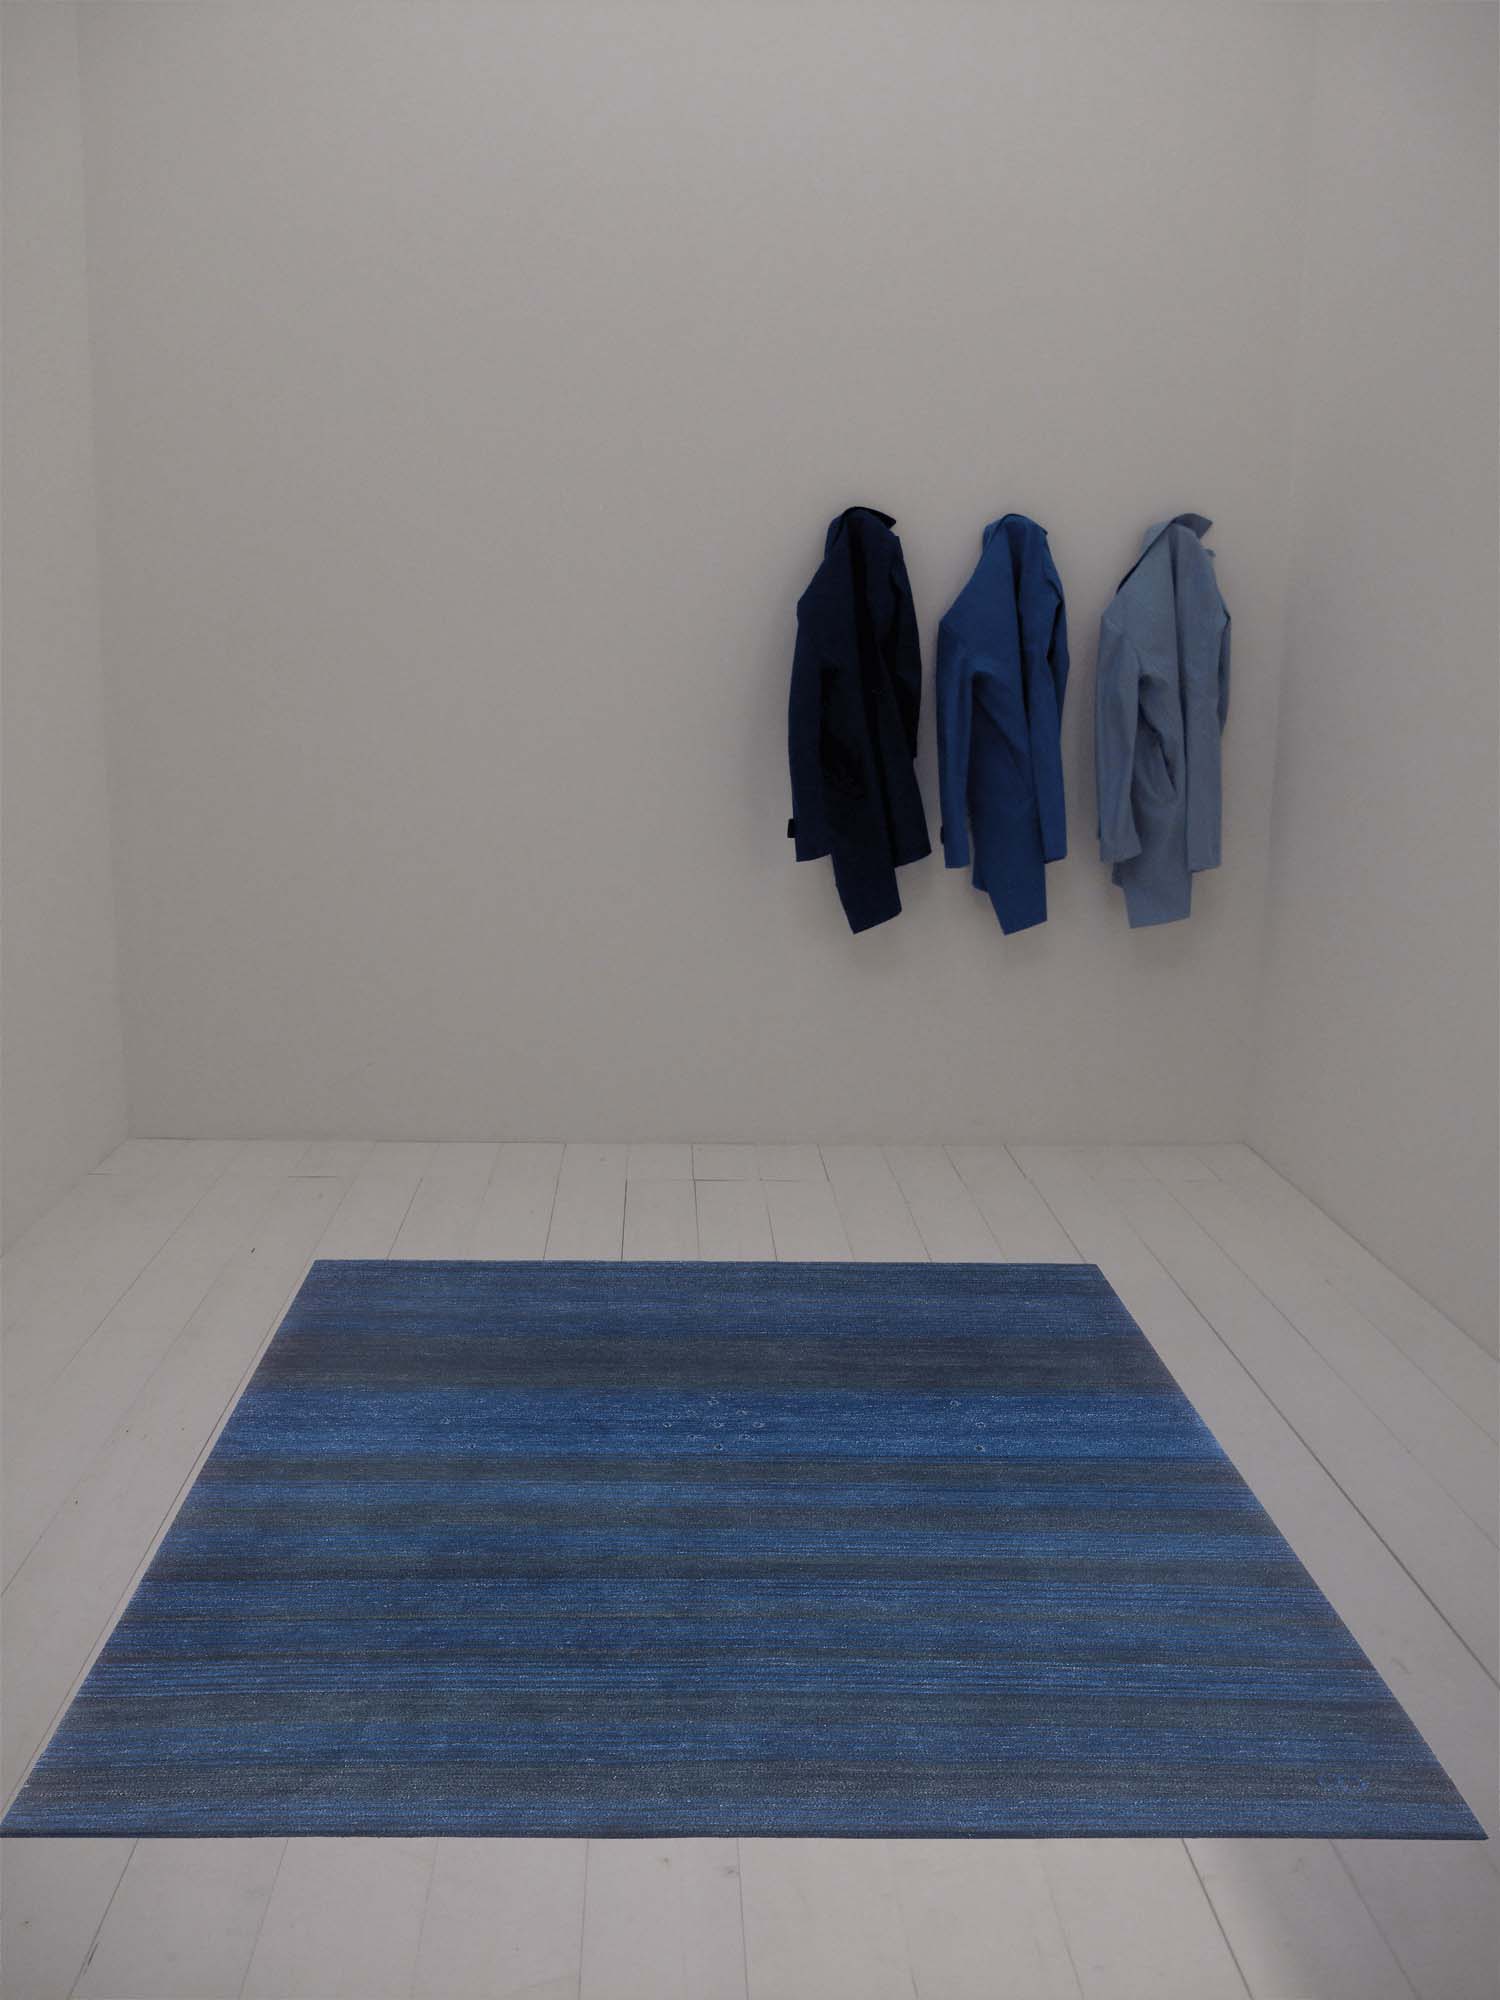 Leerer Raum mit 3 Hemden in unterschiedlichen Blautönen und Geba Teppich "Kumra blue" - Geba Teppich